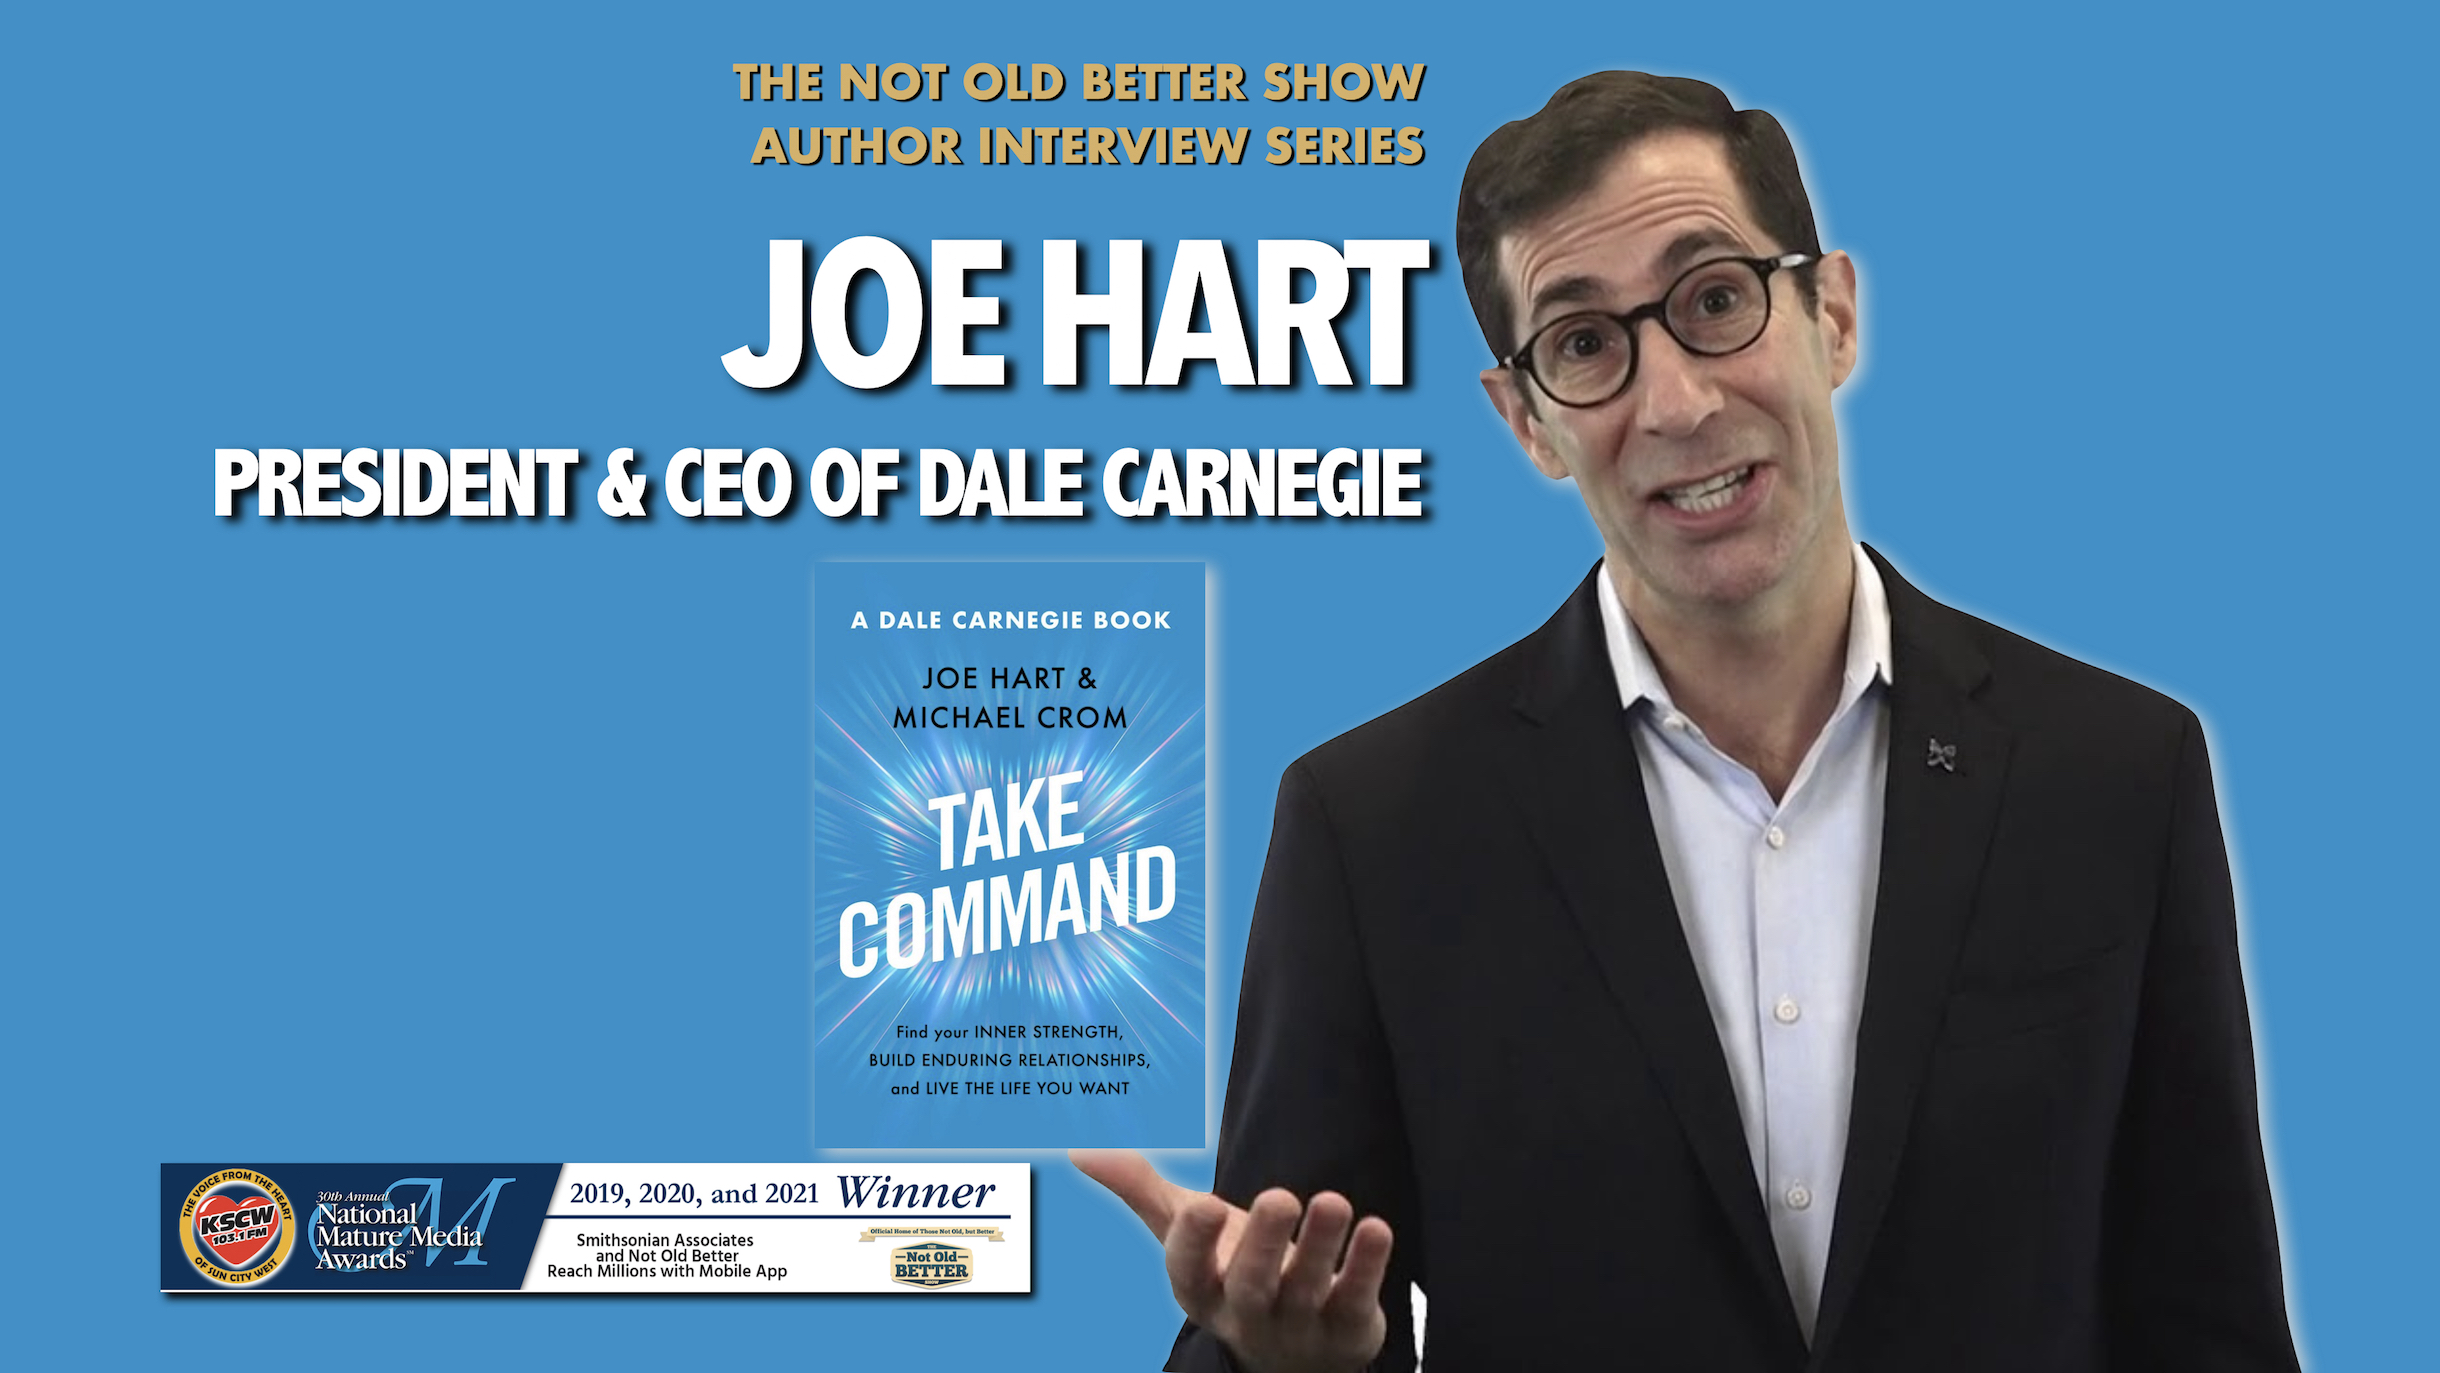 TAKE COMMAND – Joe Hart